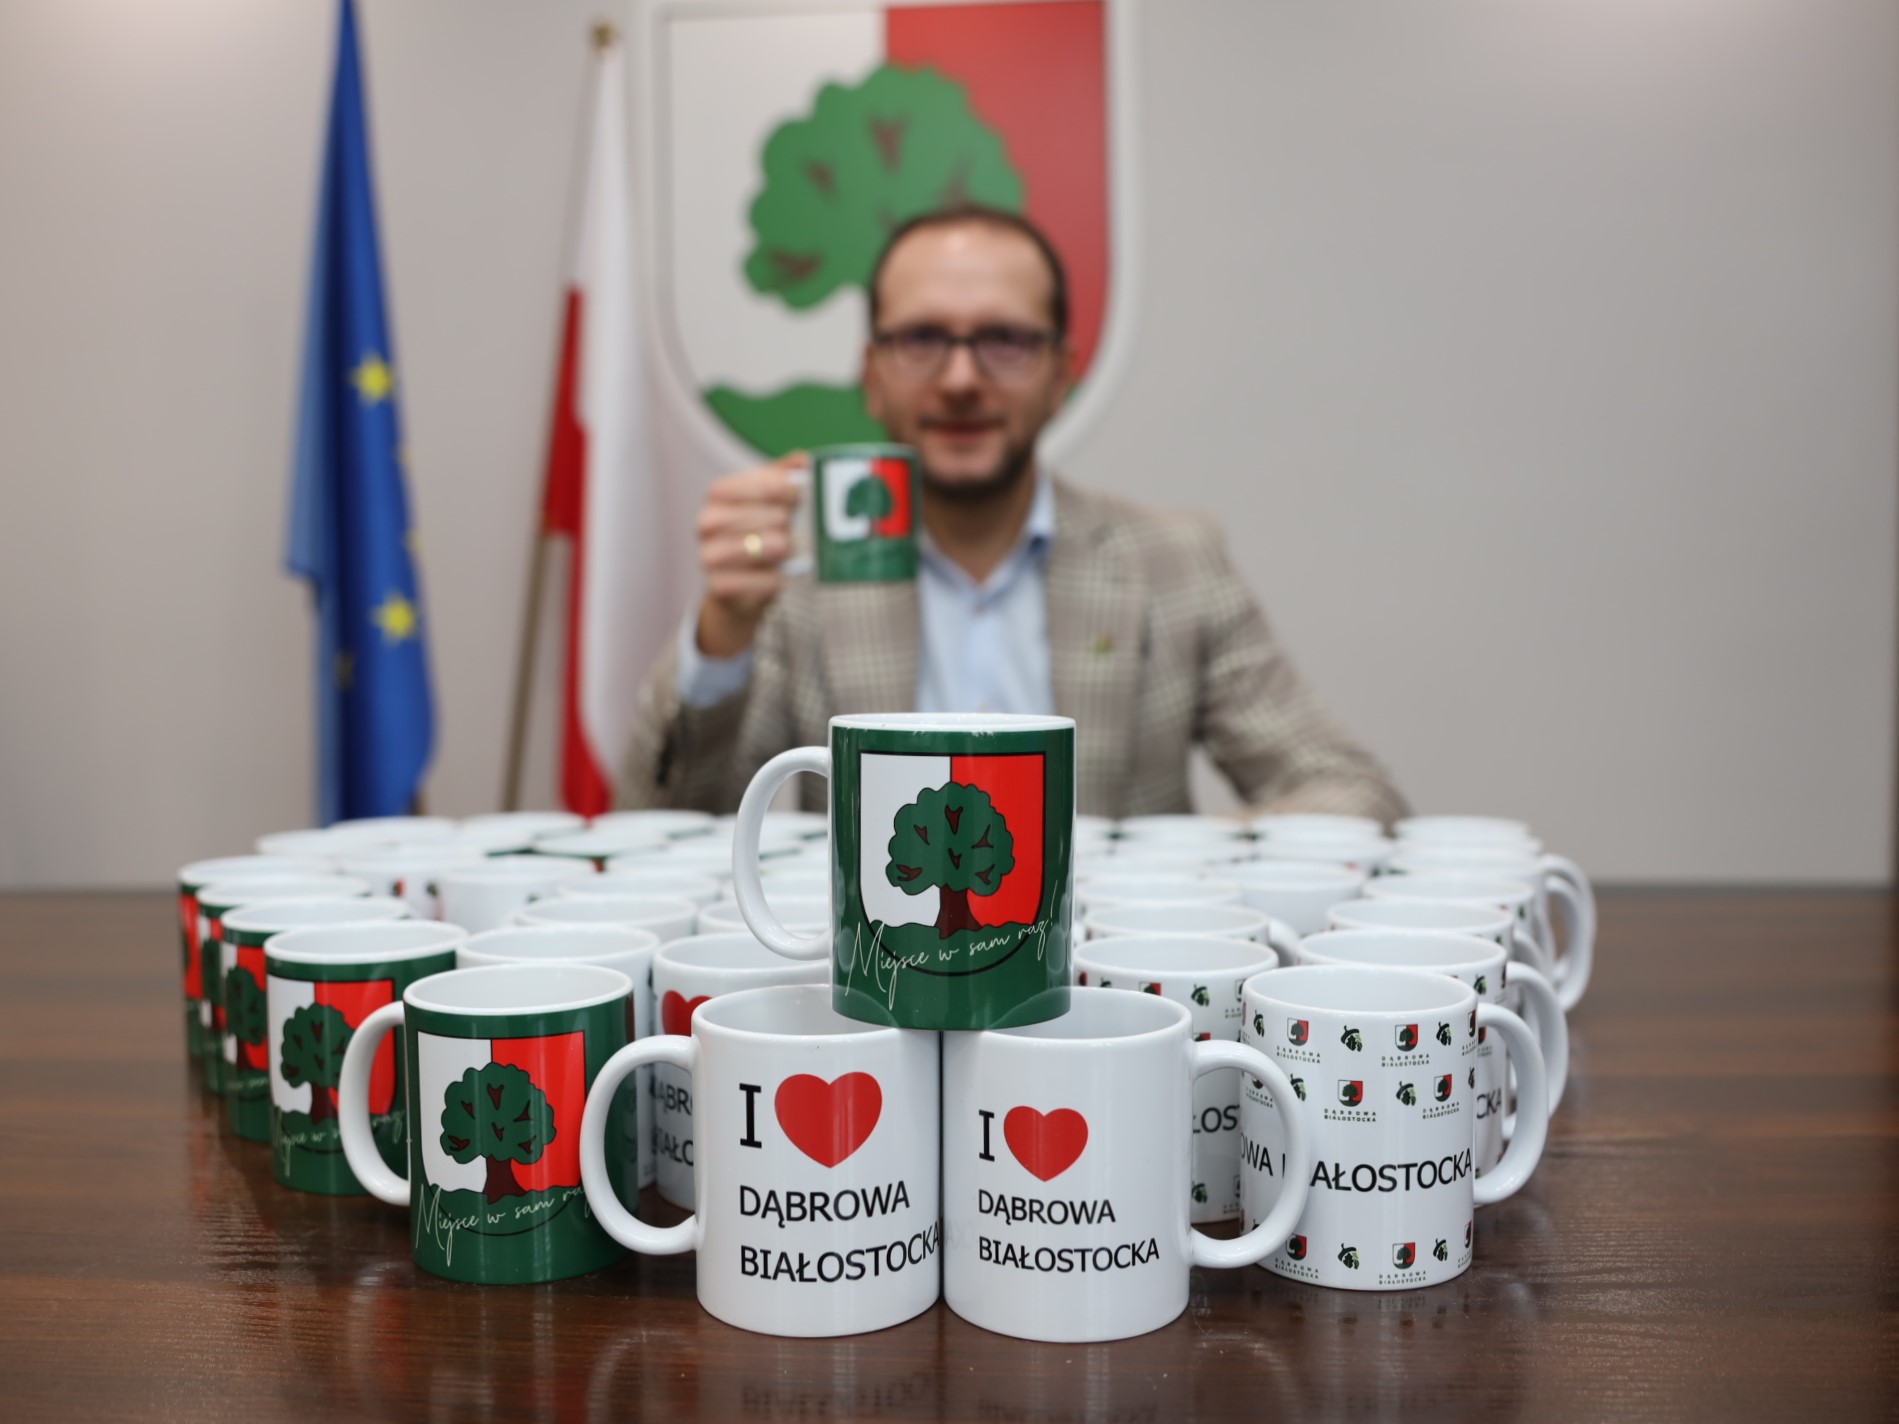 burmistrz pije kawę w kubku grafiką gminy